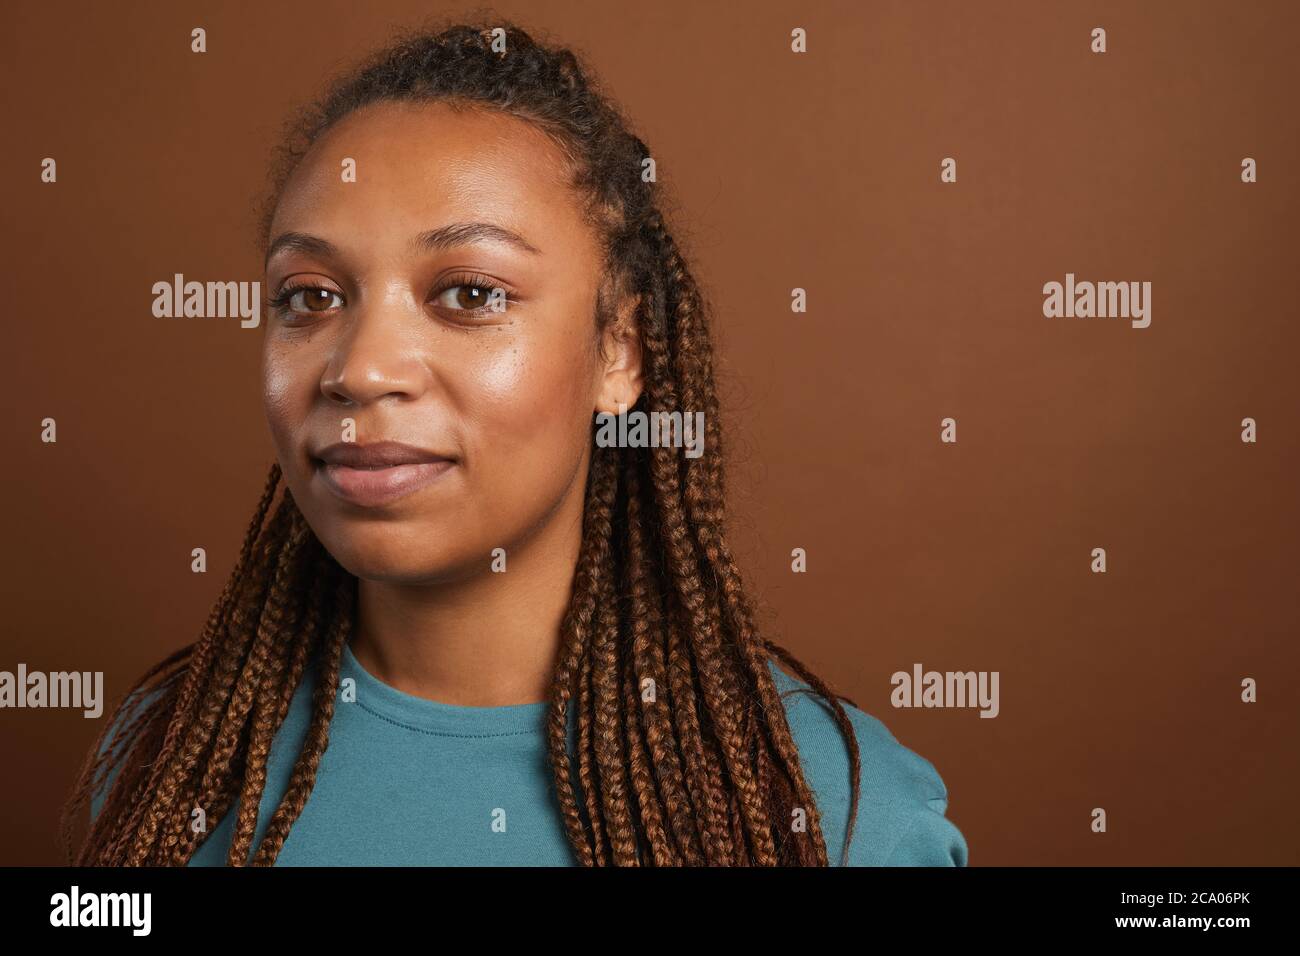 Retrato mínimo de la cabeza y los hombros de una mujer afroamericana moderna sonriendo a la cámara mientras se pone de pie sobre fondo marrón en el estudio, espacio de copia Foto de stock